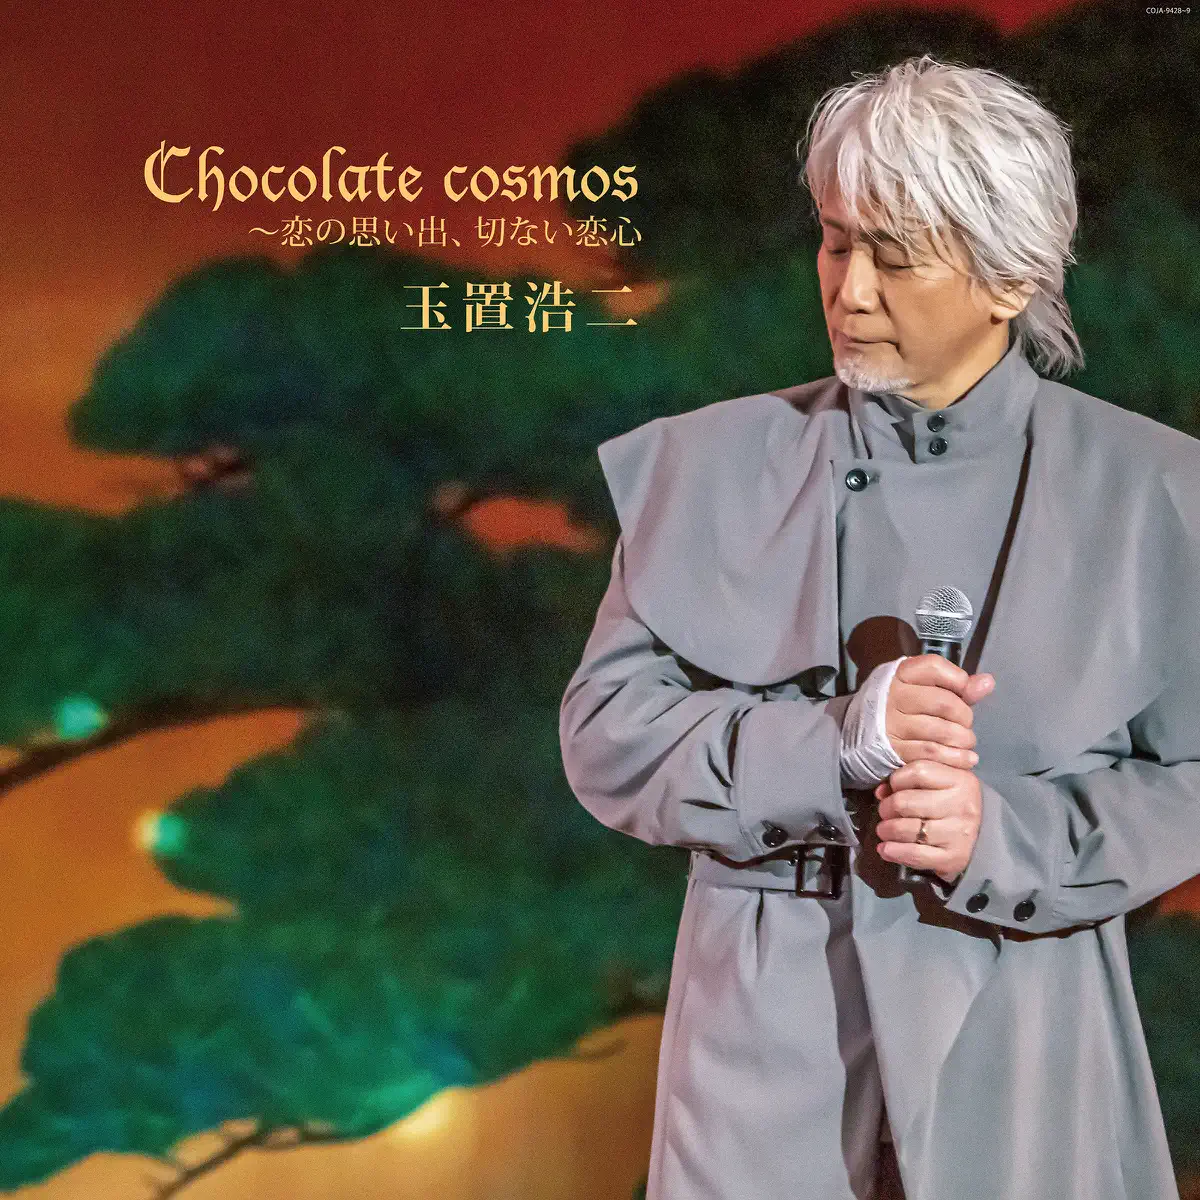 玉置浩二 - Chocolate cosmos 〜恋の思い出、切ない恋心 (Live) [オーディオバージョン] (2021) [iTunes Plus AAC M4A]-新房子